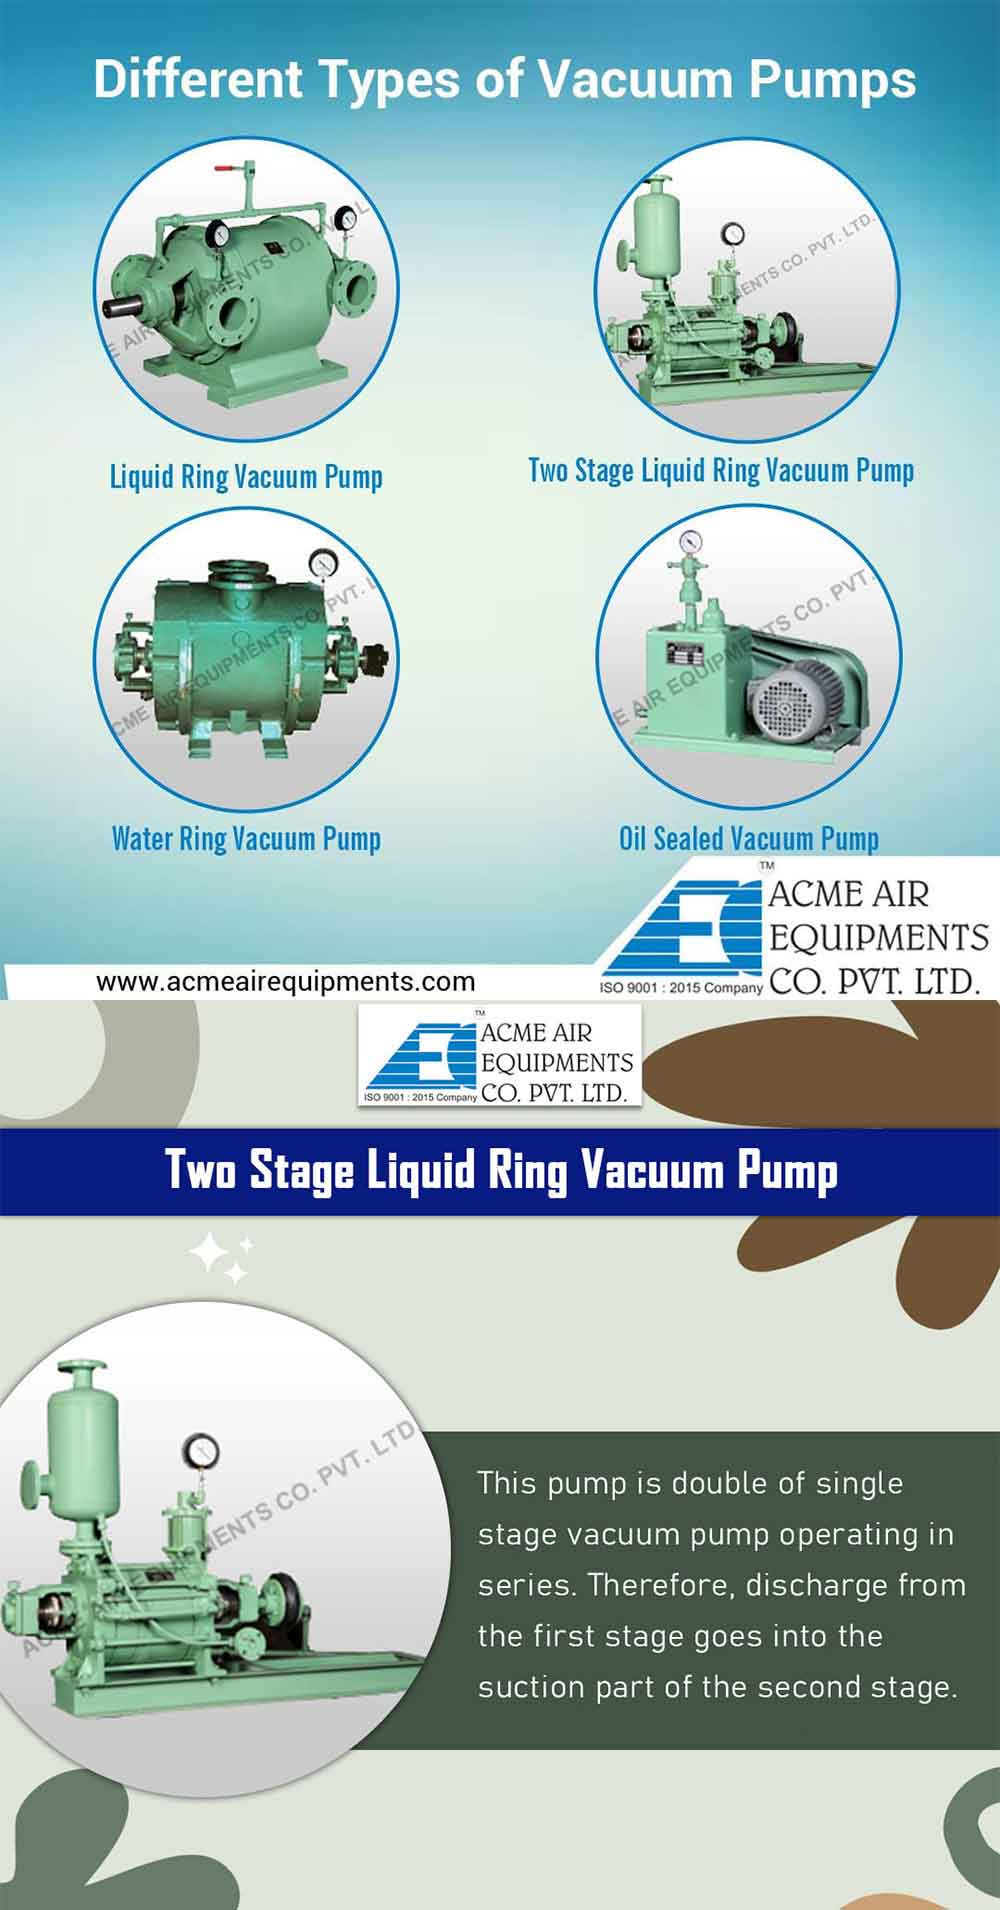 Liquid Ring Vacuum Pump & Two Stage Liquid Ring Vacuum Pump